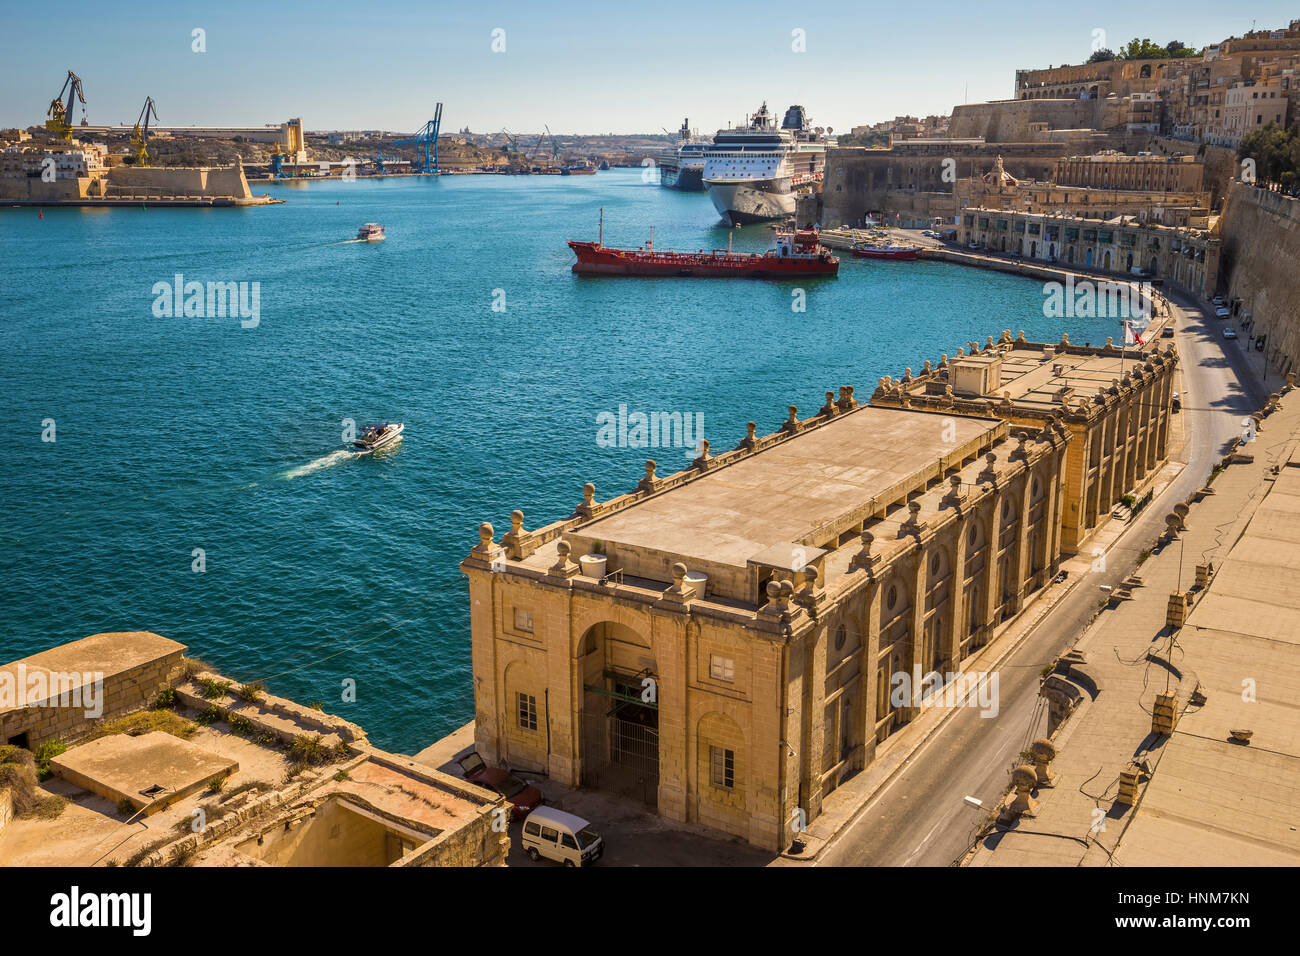 La Valette, Malte - Le Grand Port de Malte avec les navires de croisière, bateaux et ciel bleu clair Banque D'Images